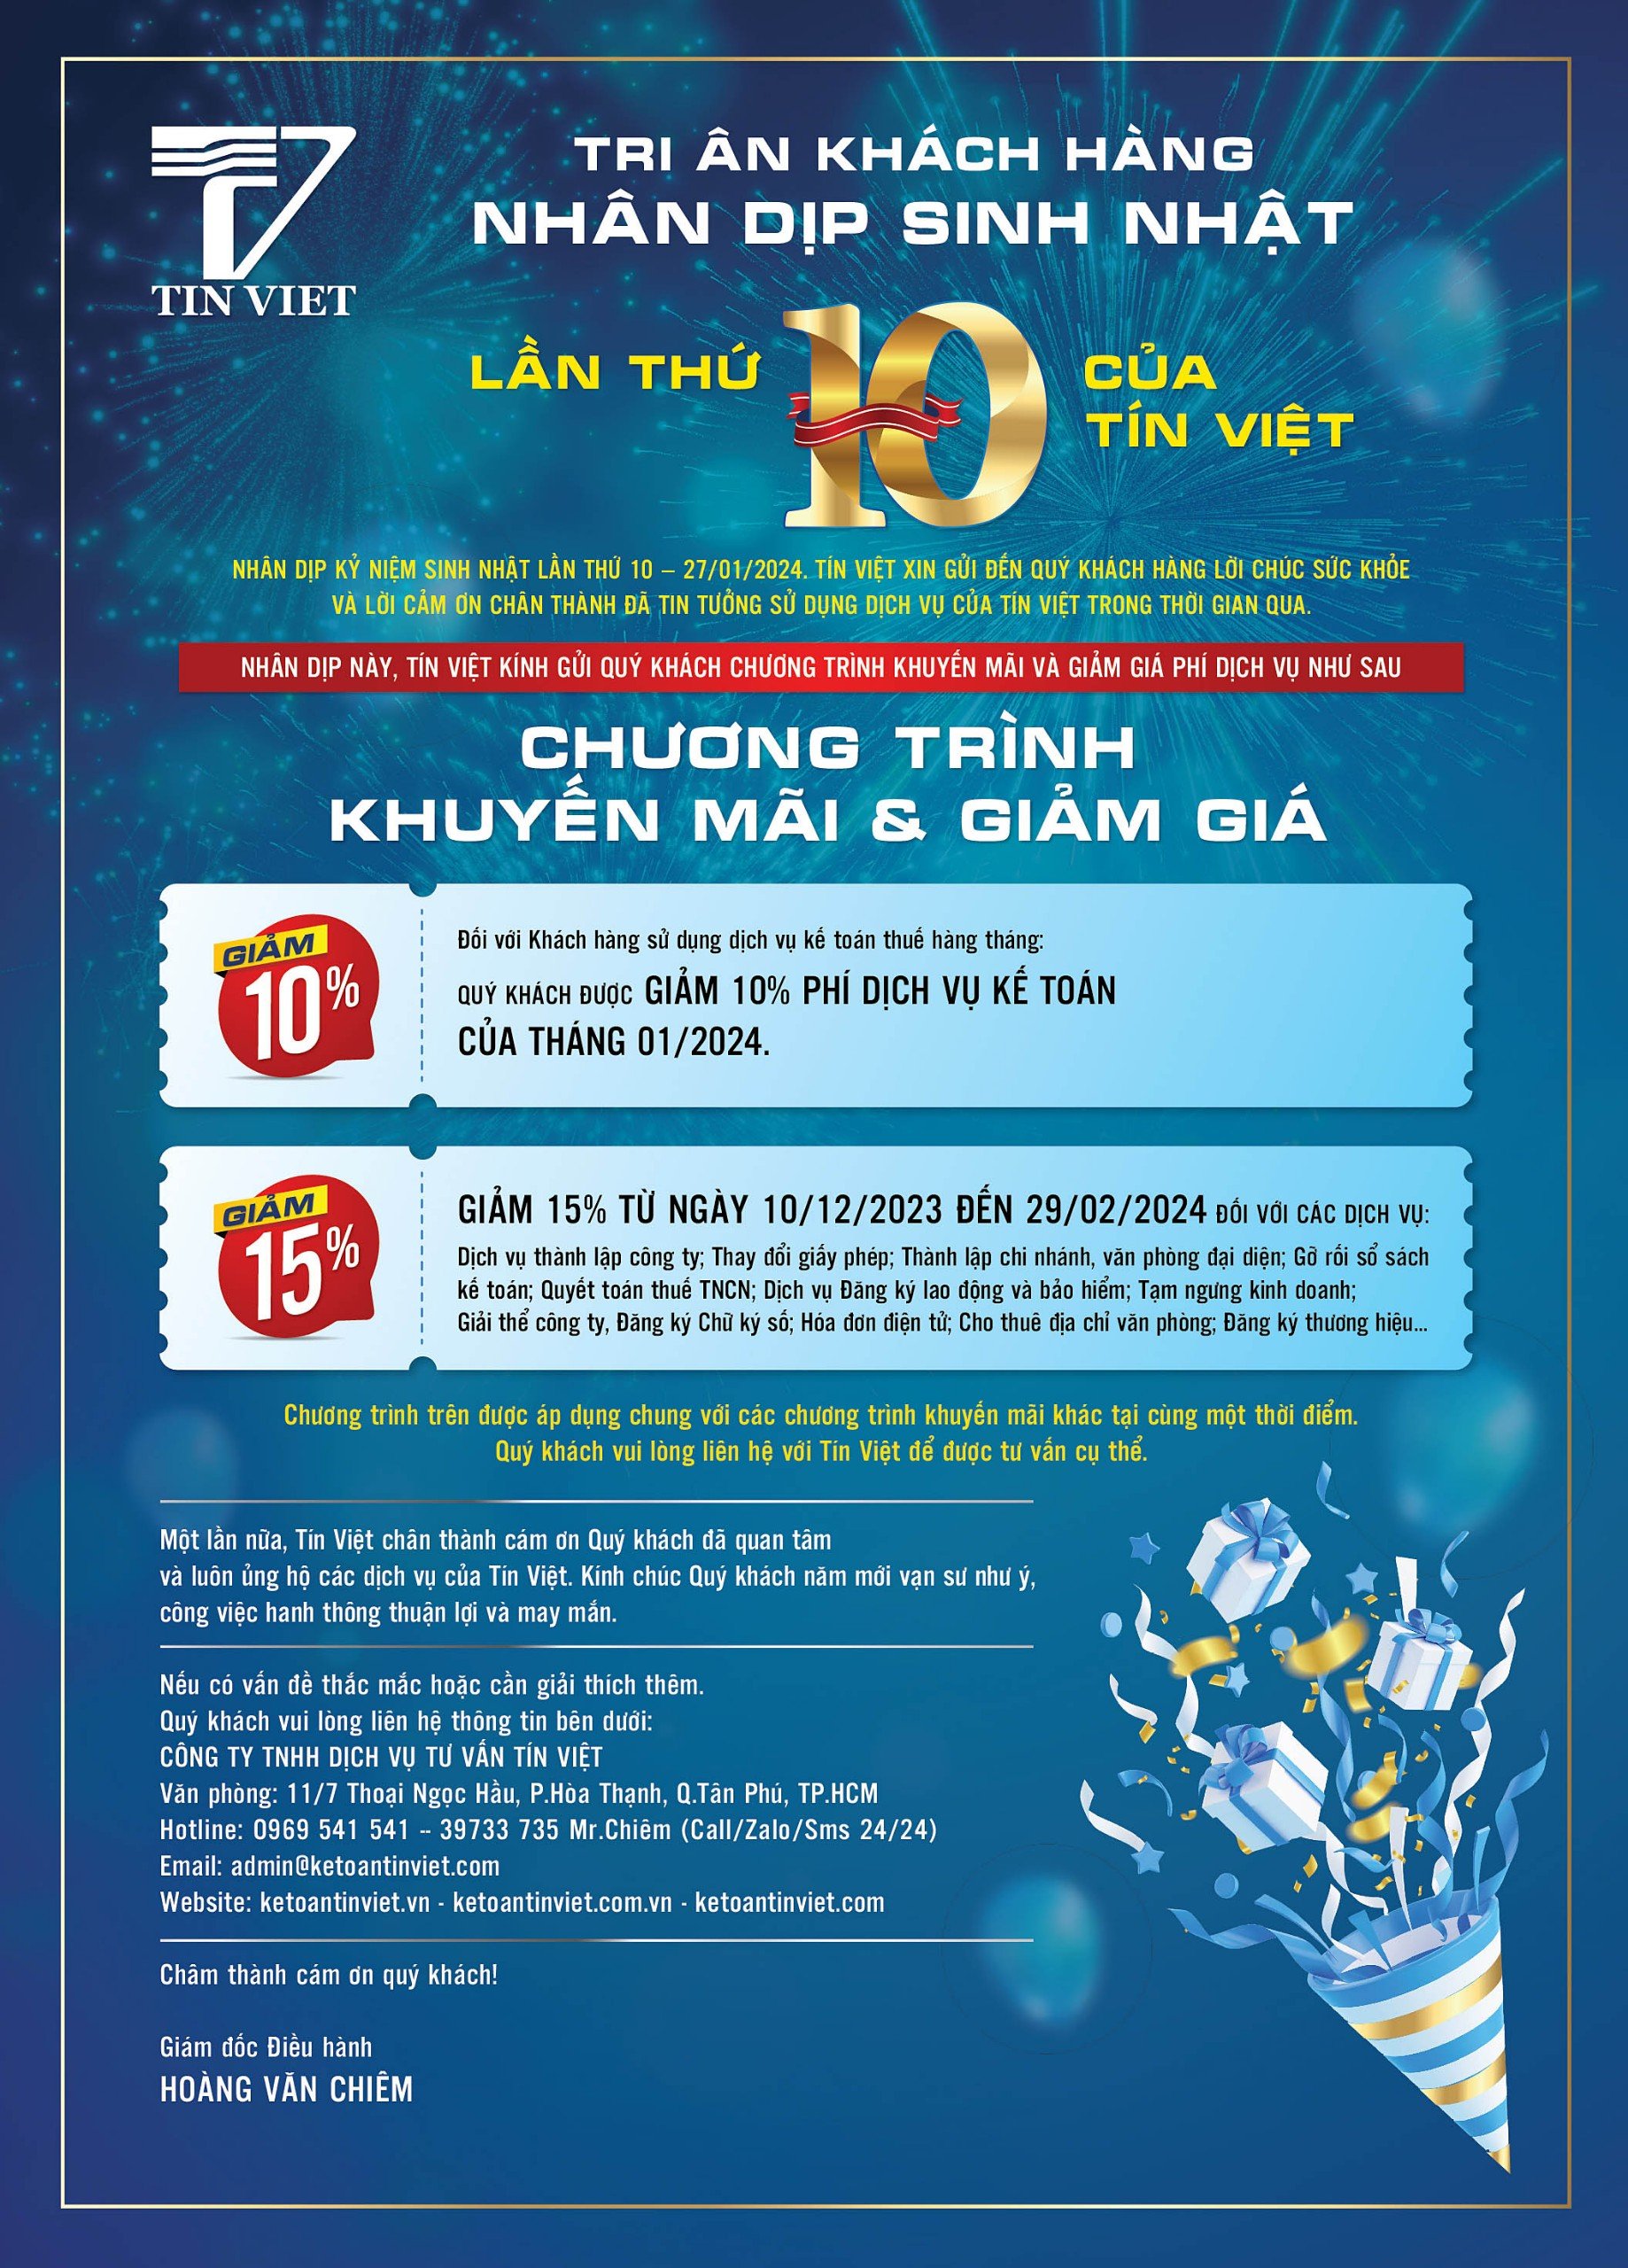 Tri ân khách hàng Nhân dịp sinh nhật lần thứ 10 của Tín Việt